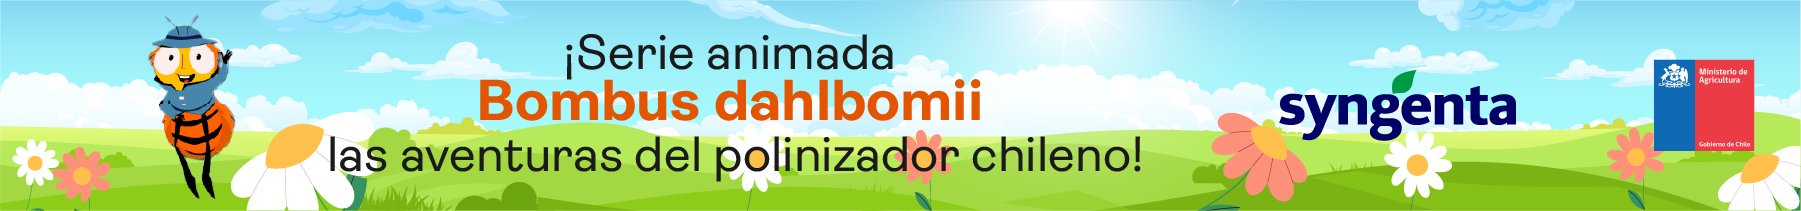 Serie animada Bombus Dahlbomii, las aventuras del polinizador chileno